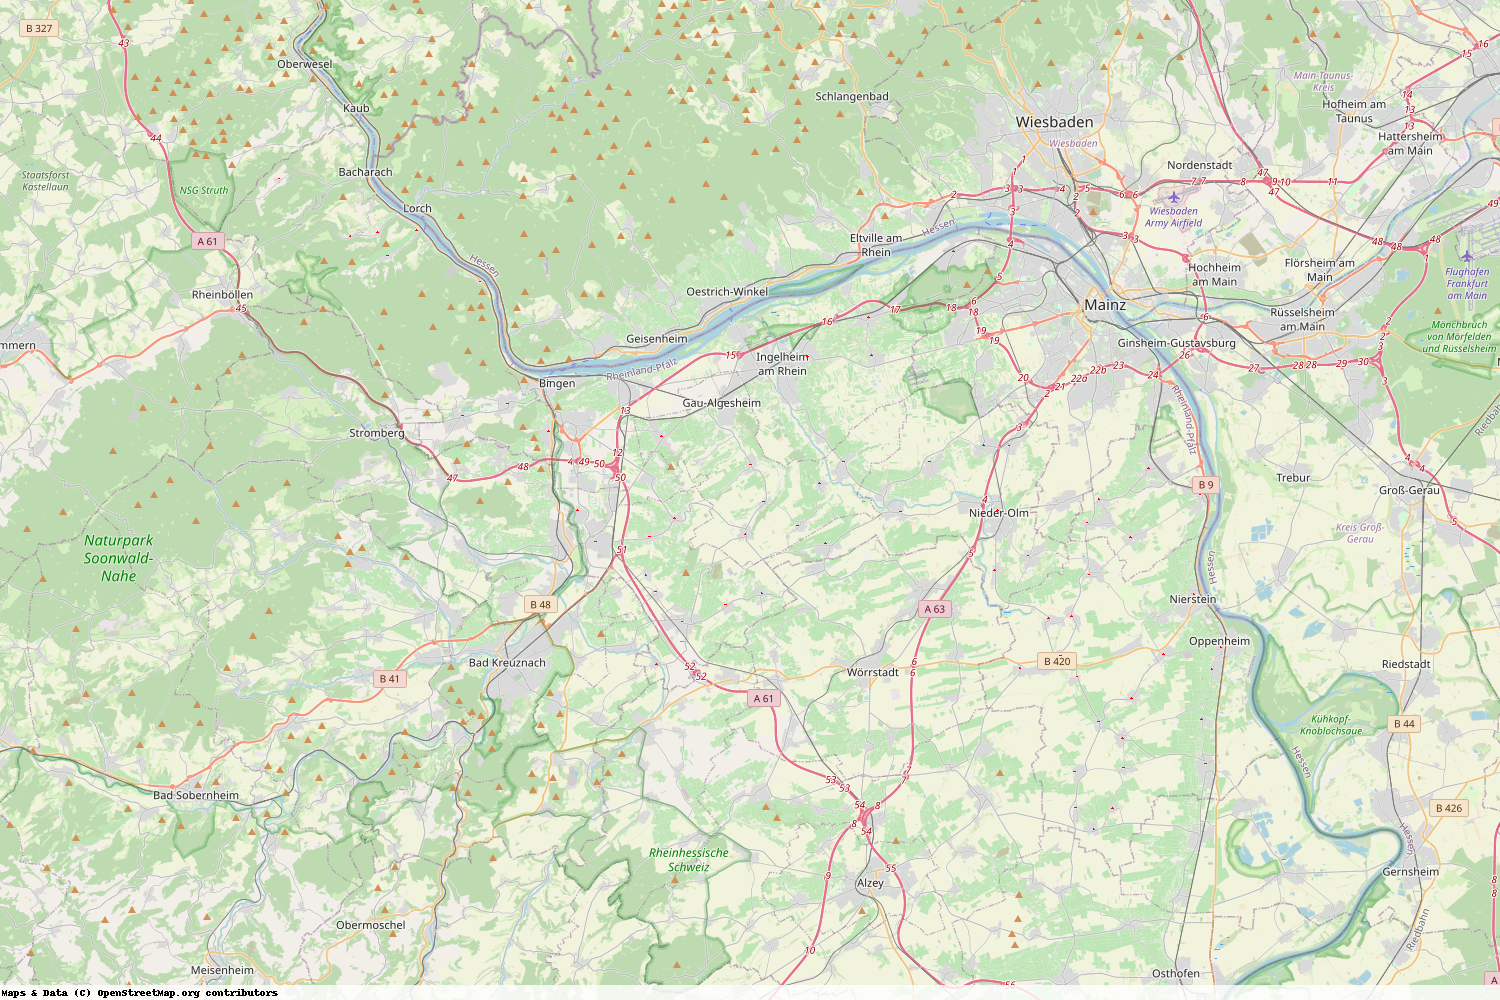 Ist gerade Stromausfall in Rheinland-Pfalz - Mainz-Bingen?